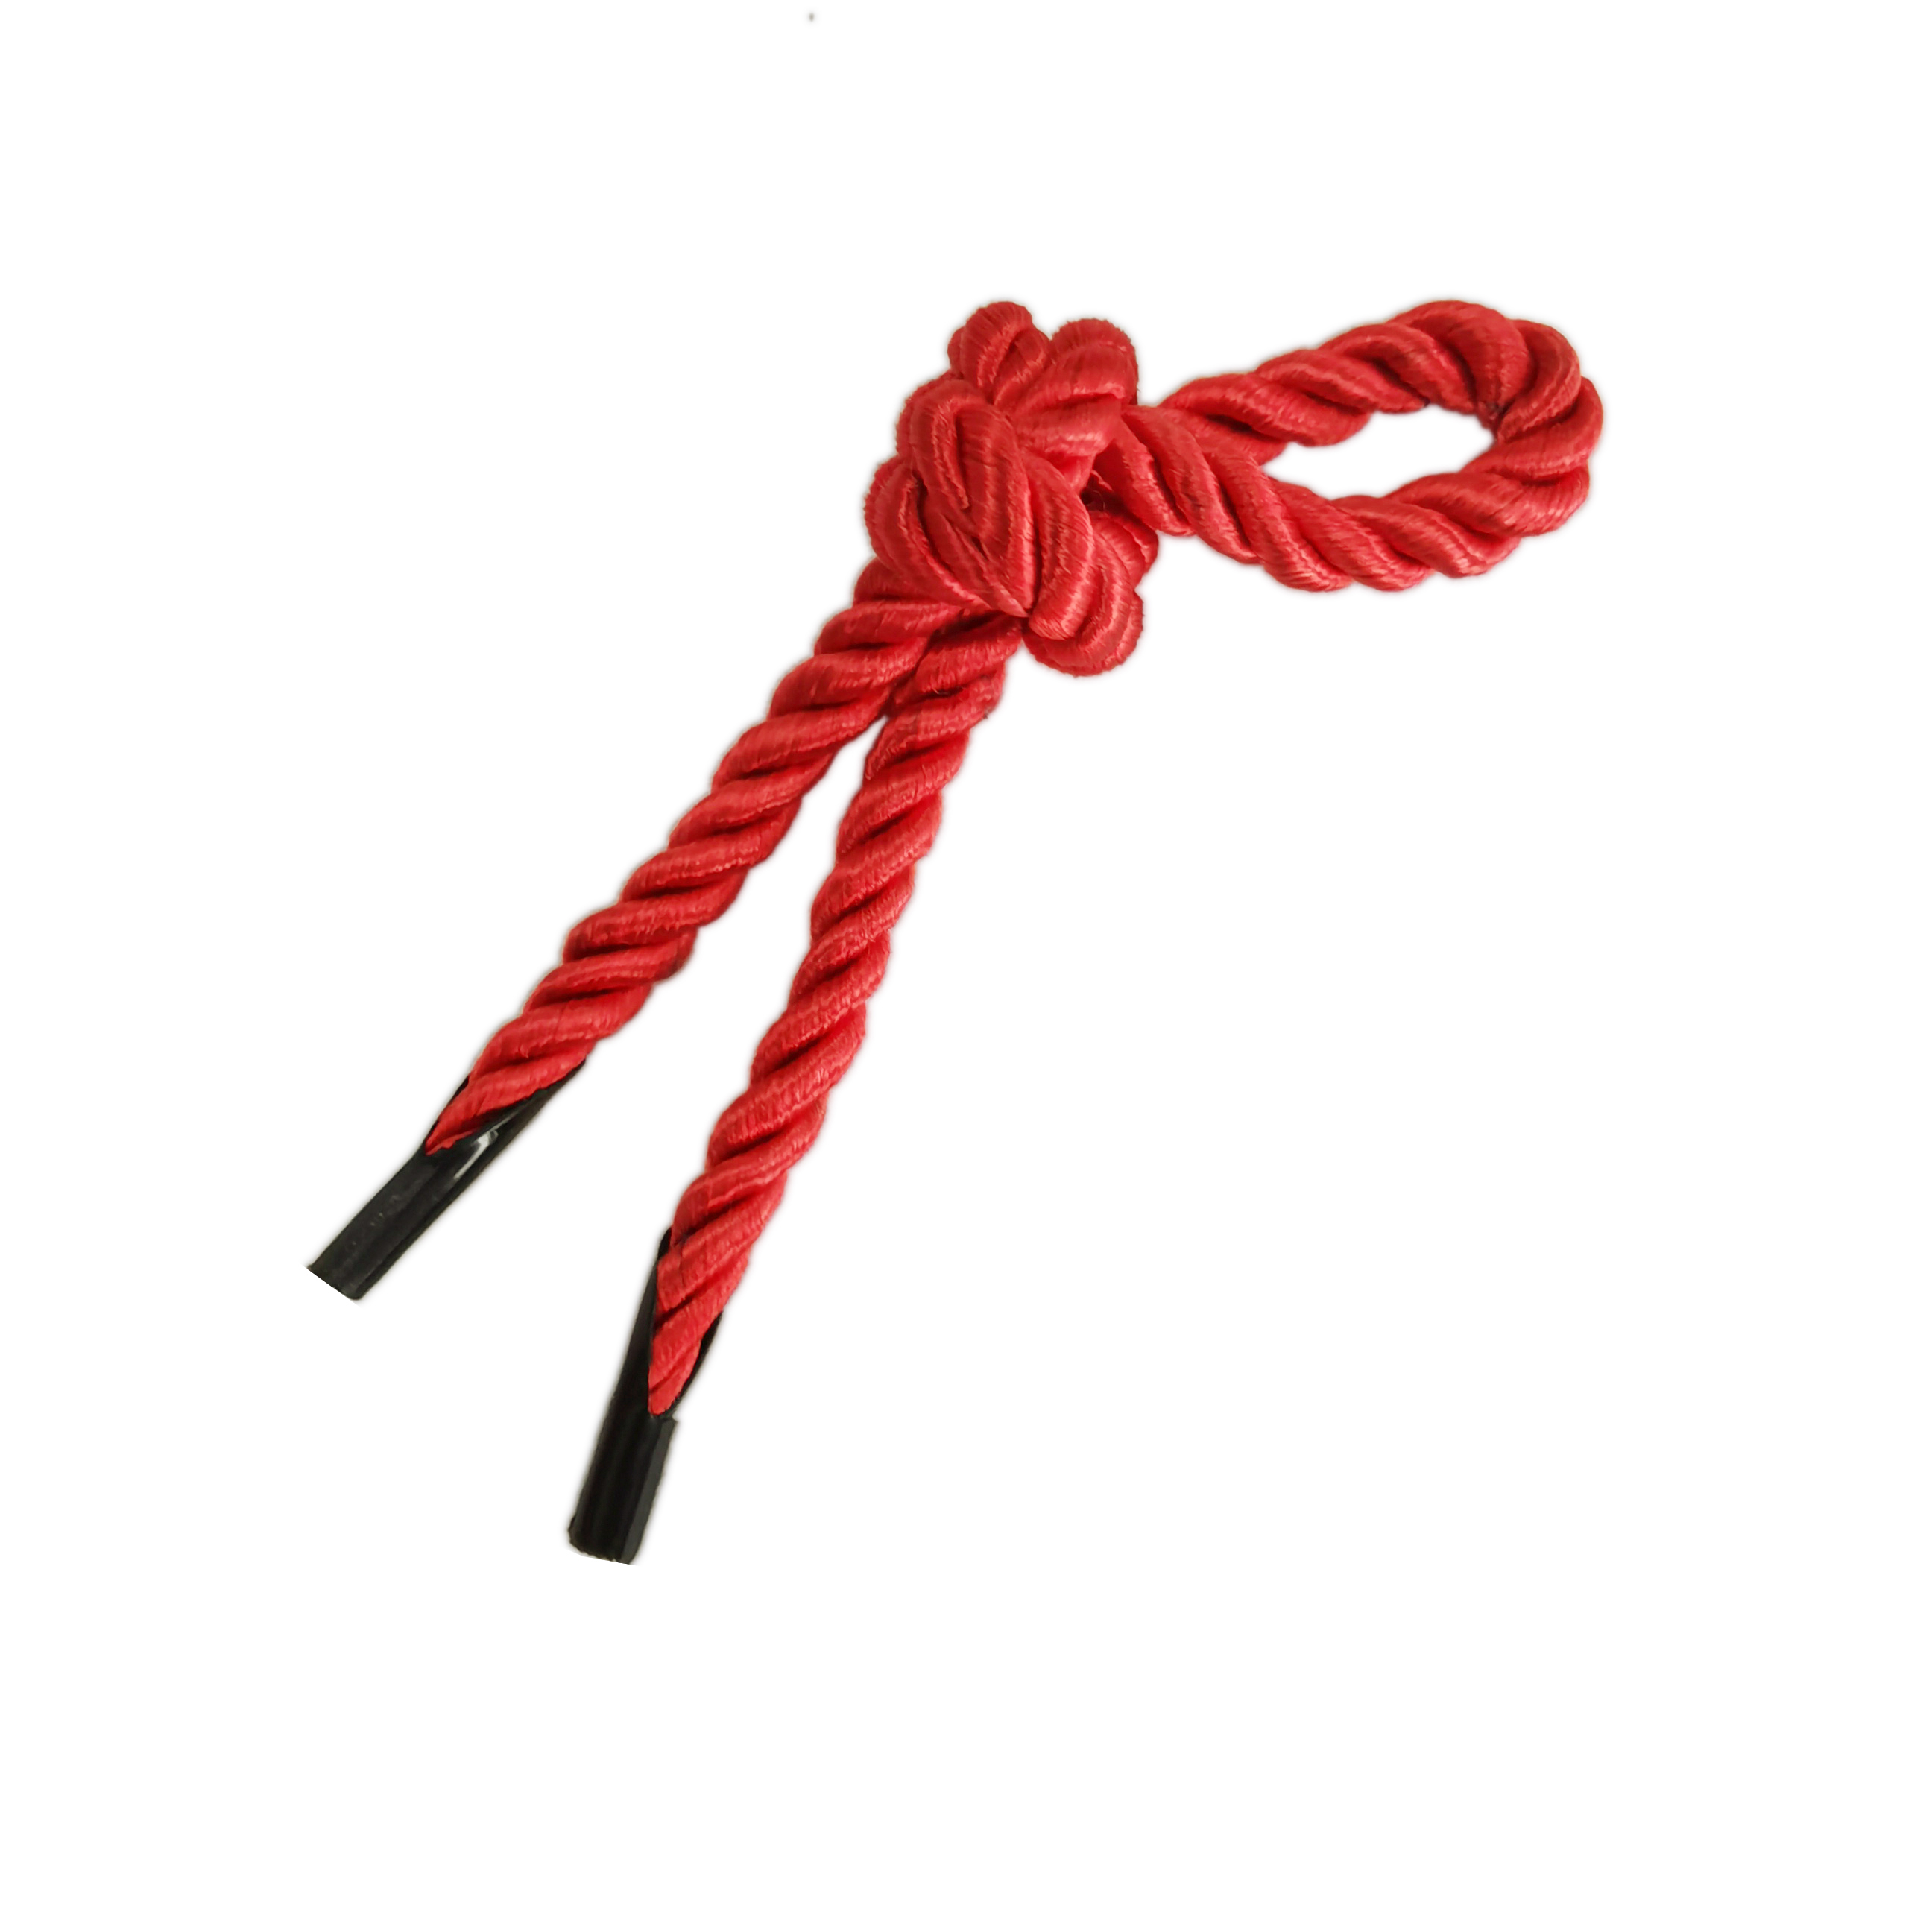 三股绳手提绳手提袋绳尼龙卡头绳包装袋绳子礼品拎绳子礼品盒绳子-图3